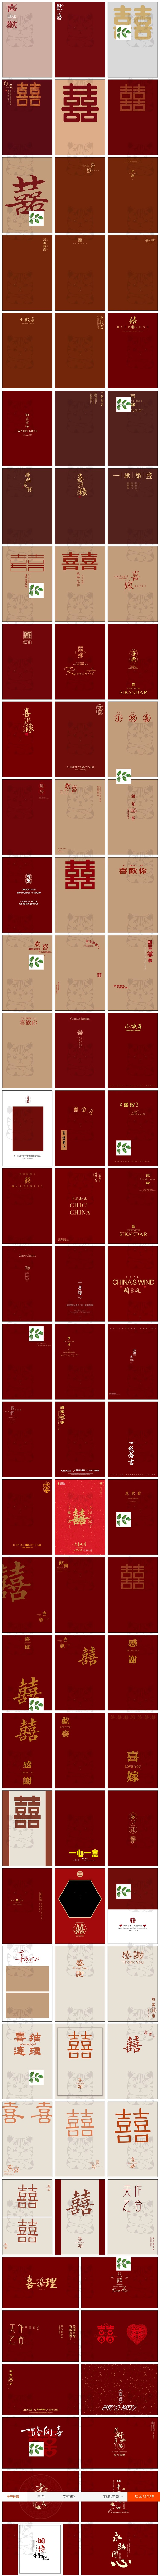 Psd-1330, Bộ 99 Psd Chất Liệu Sắp Chữ Hậu Kỳ ảnh Cưới Studio Trang Phục Cổ Xưa Xiuhe Phong Cách Trung Quốc Mới (1)